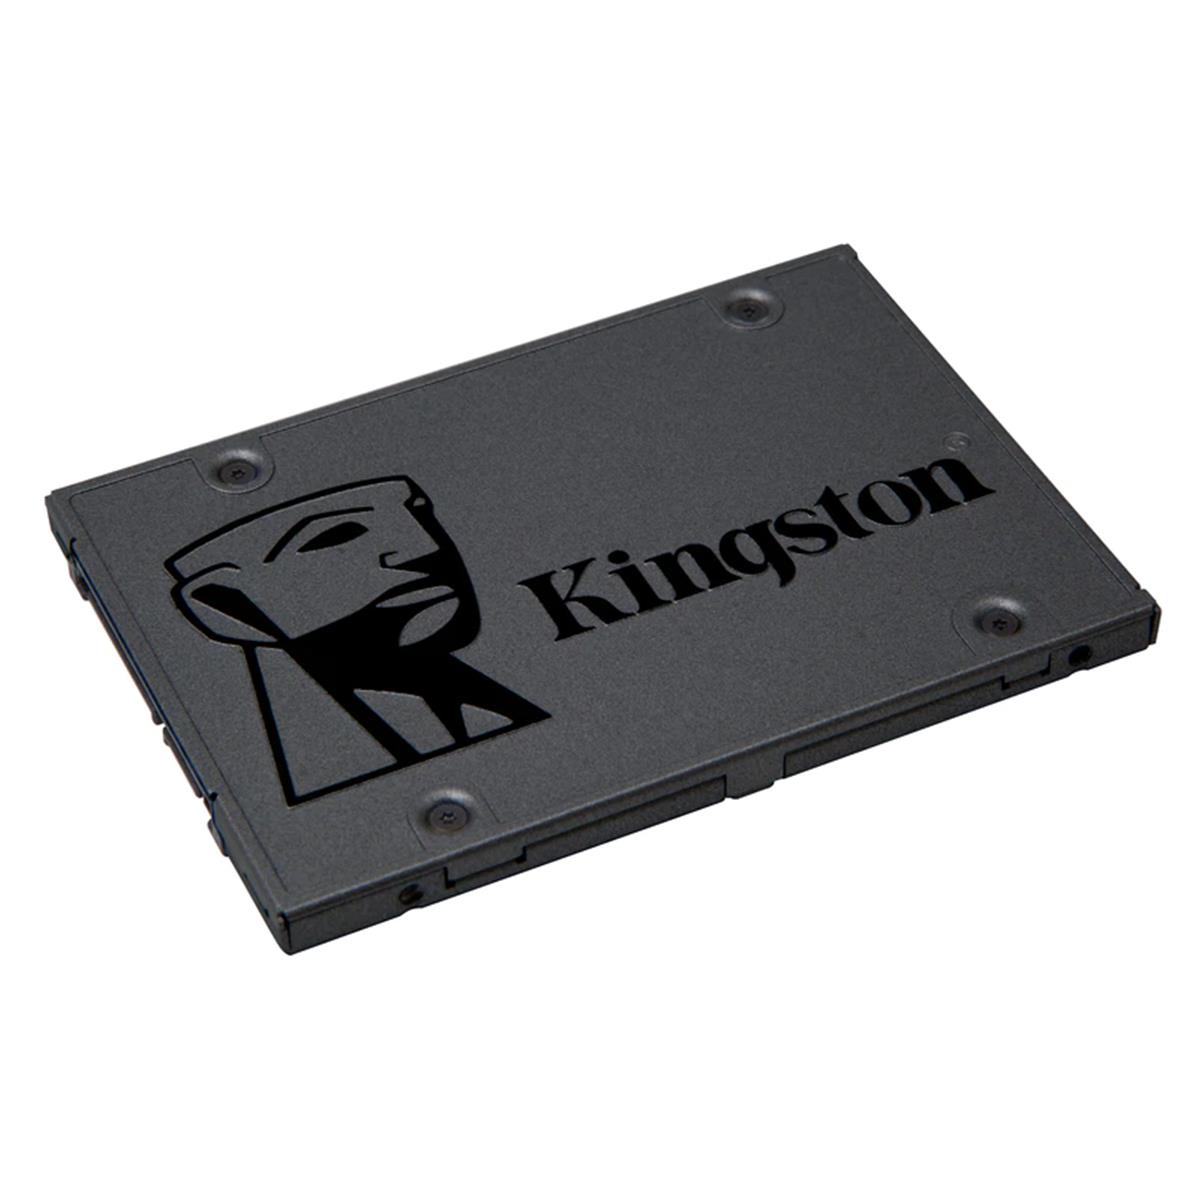 SSD 240 GB KINGSTON SA400S37/240G - SATA III